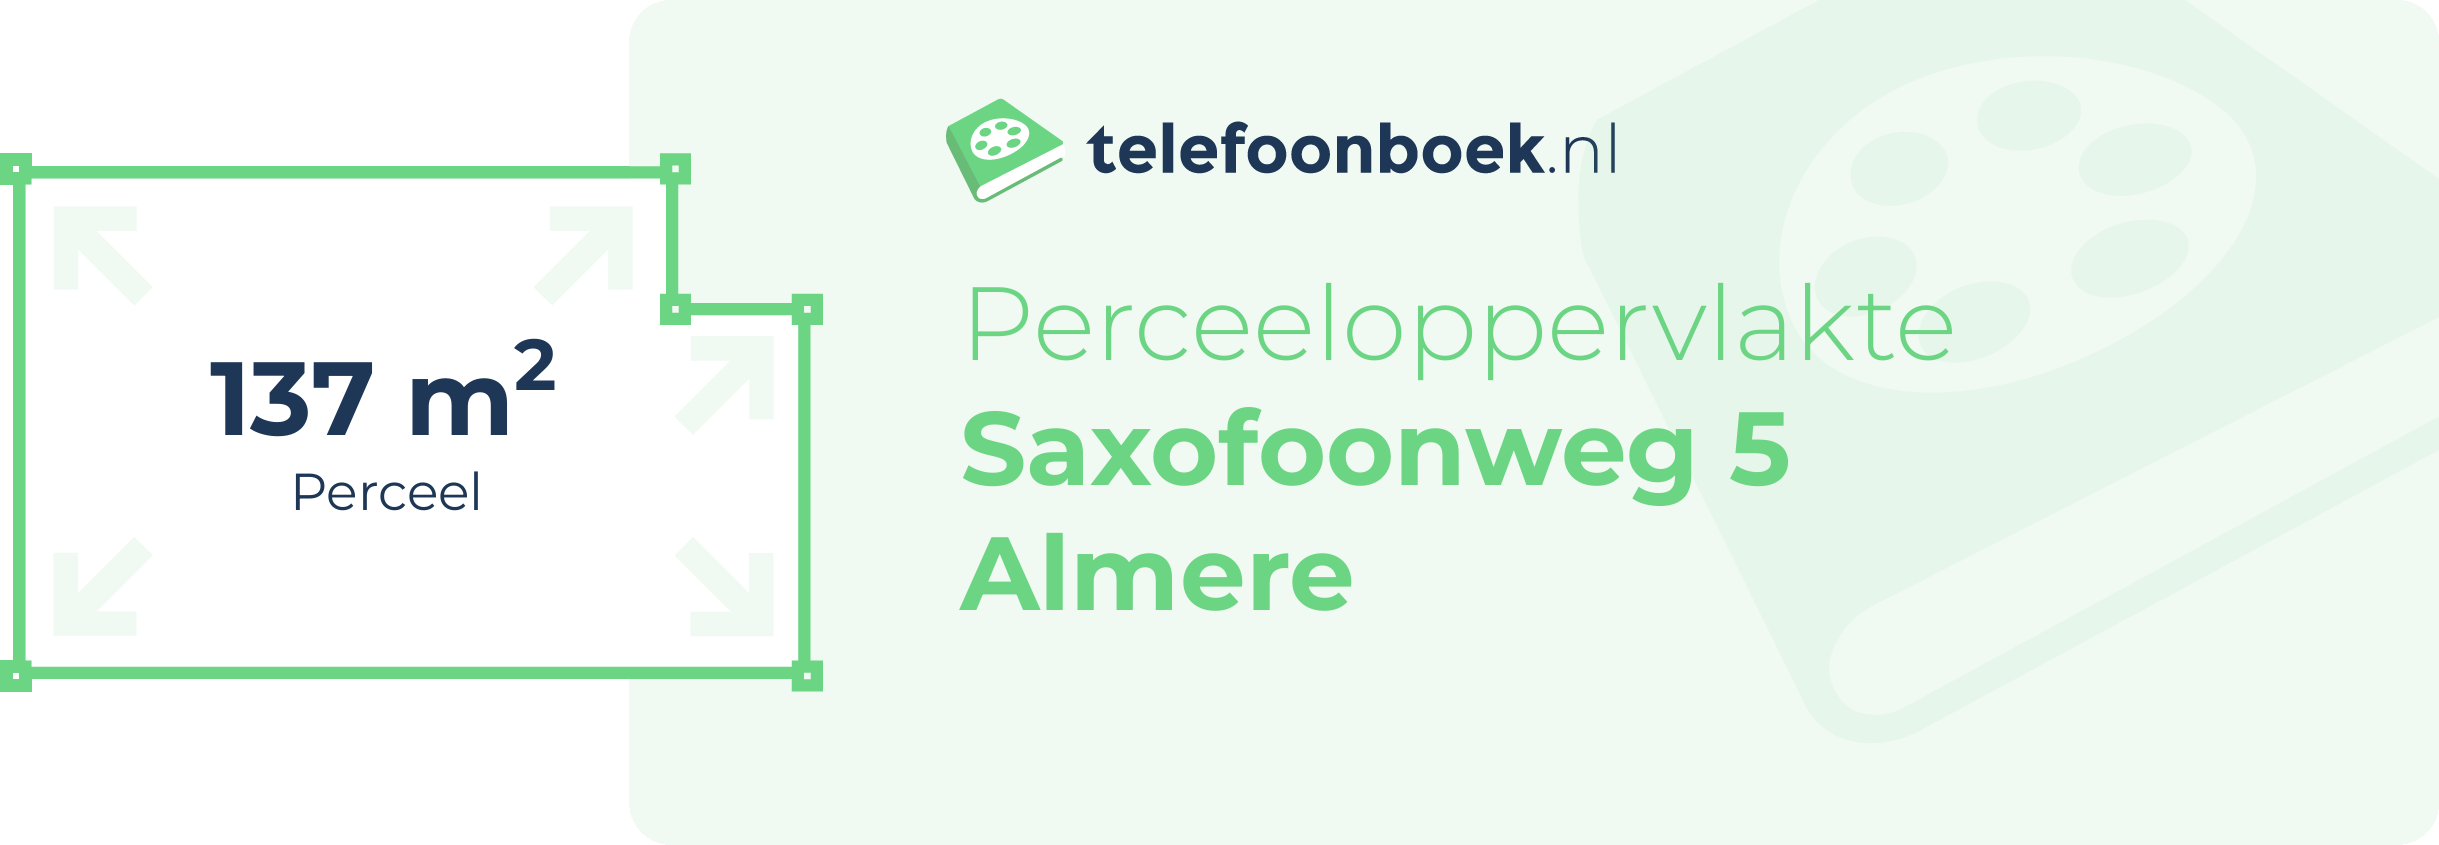 Perceeloppervlakte Saxofoonweg 5 Almere